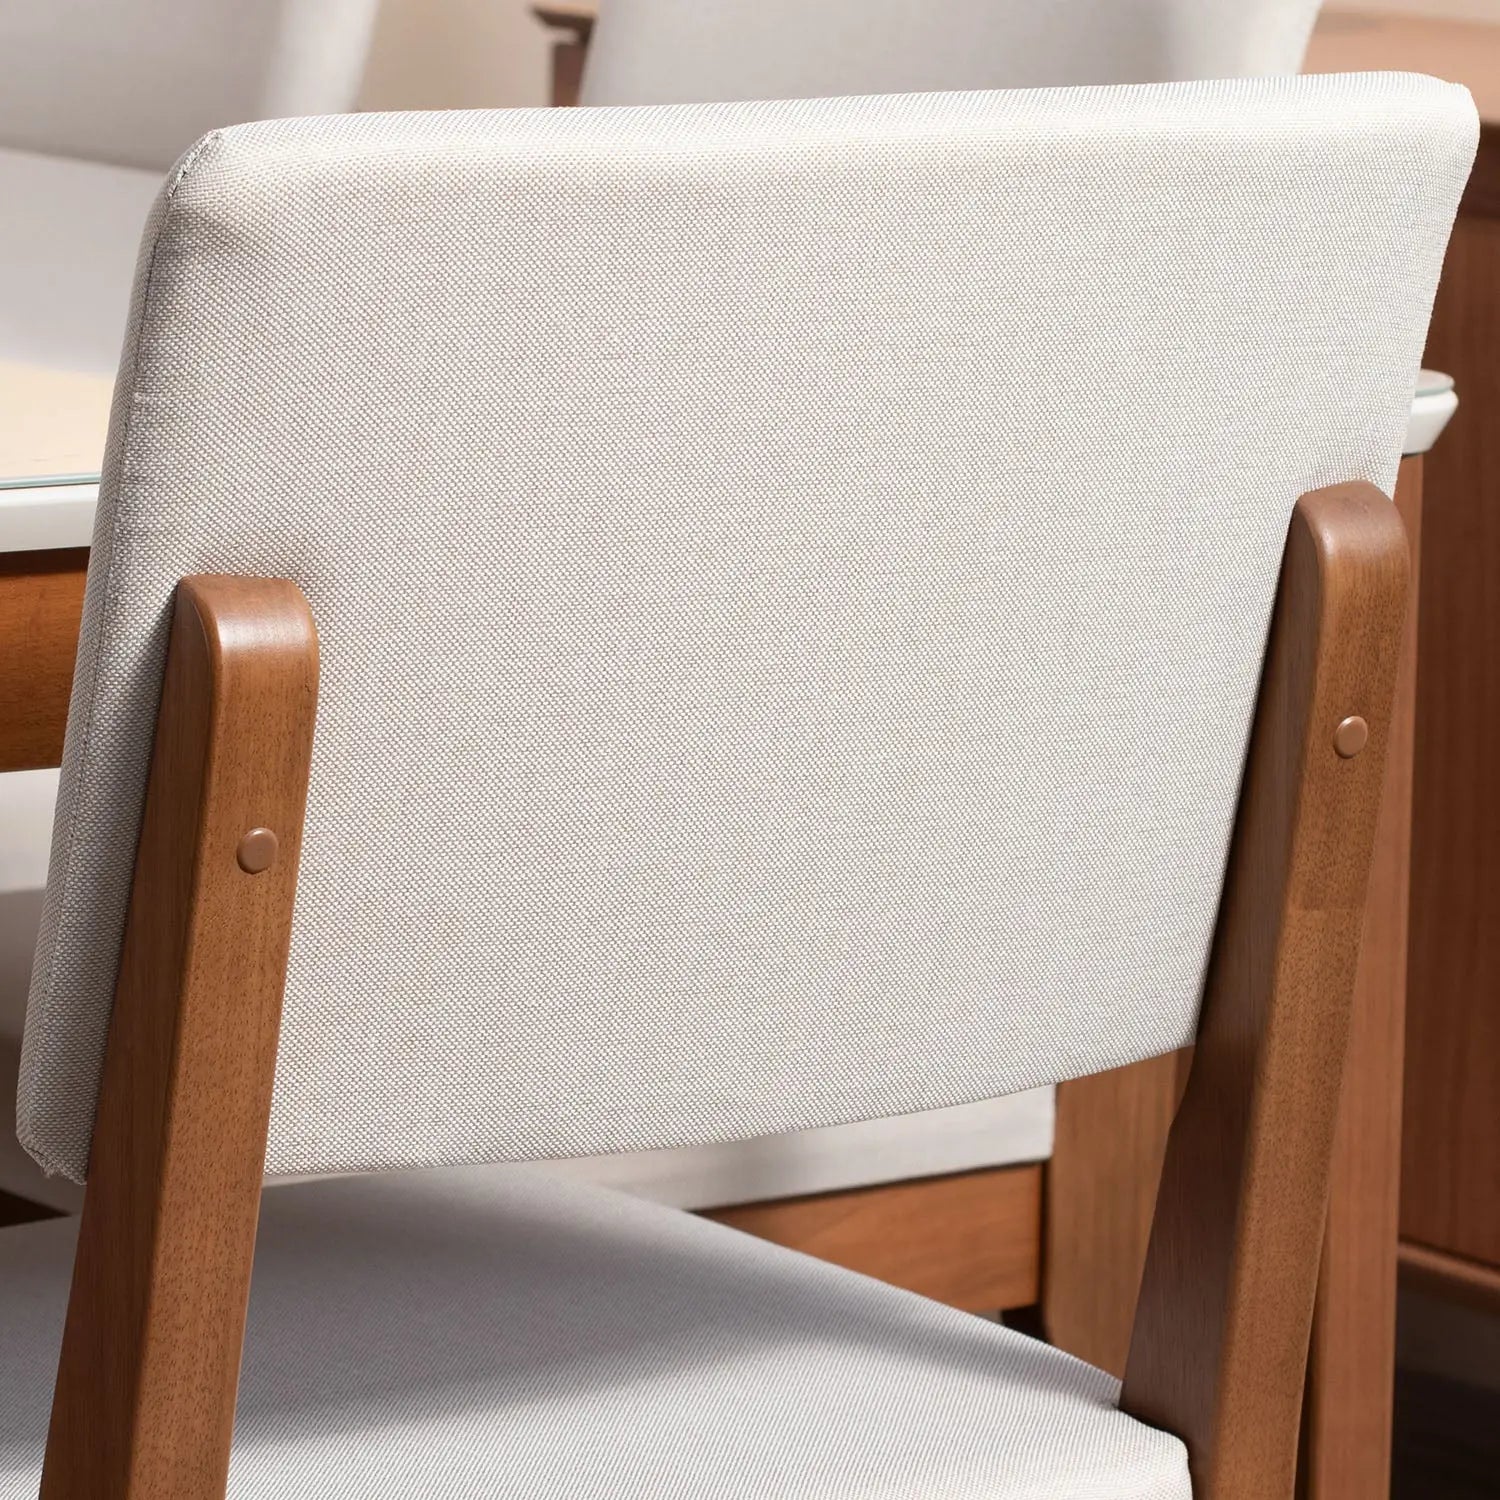 Homedock Conjunto de Jantar Mesa com Vidro 6 Cadeiras Ella - Natural c/ Off White Móveis Província